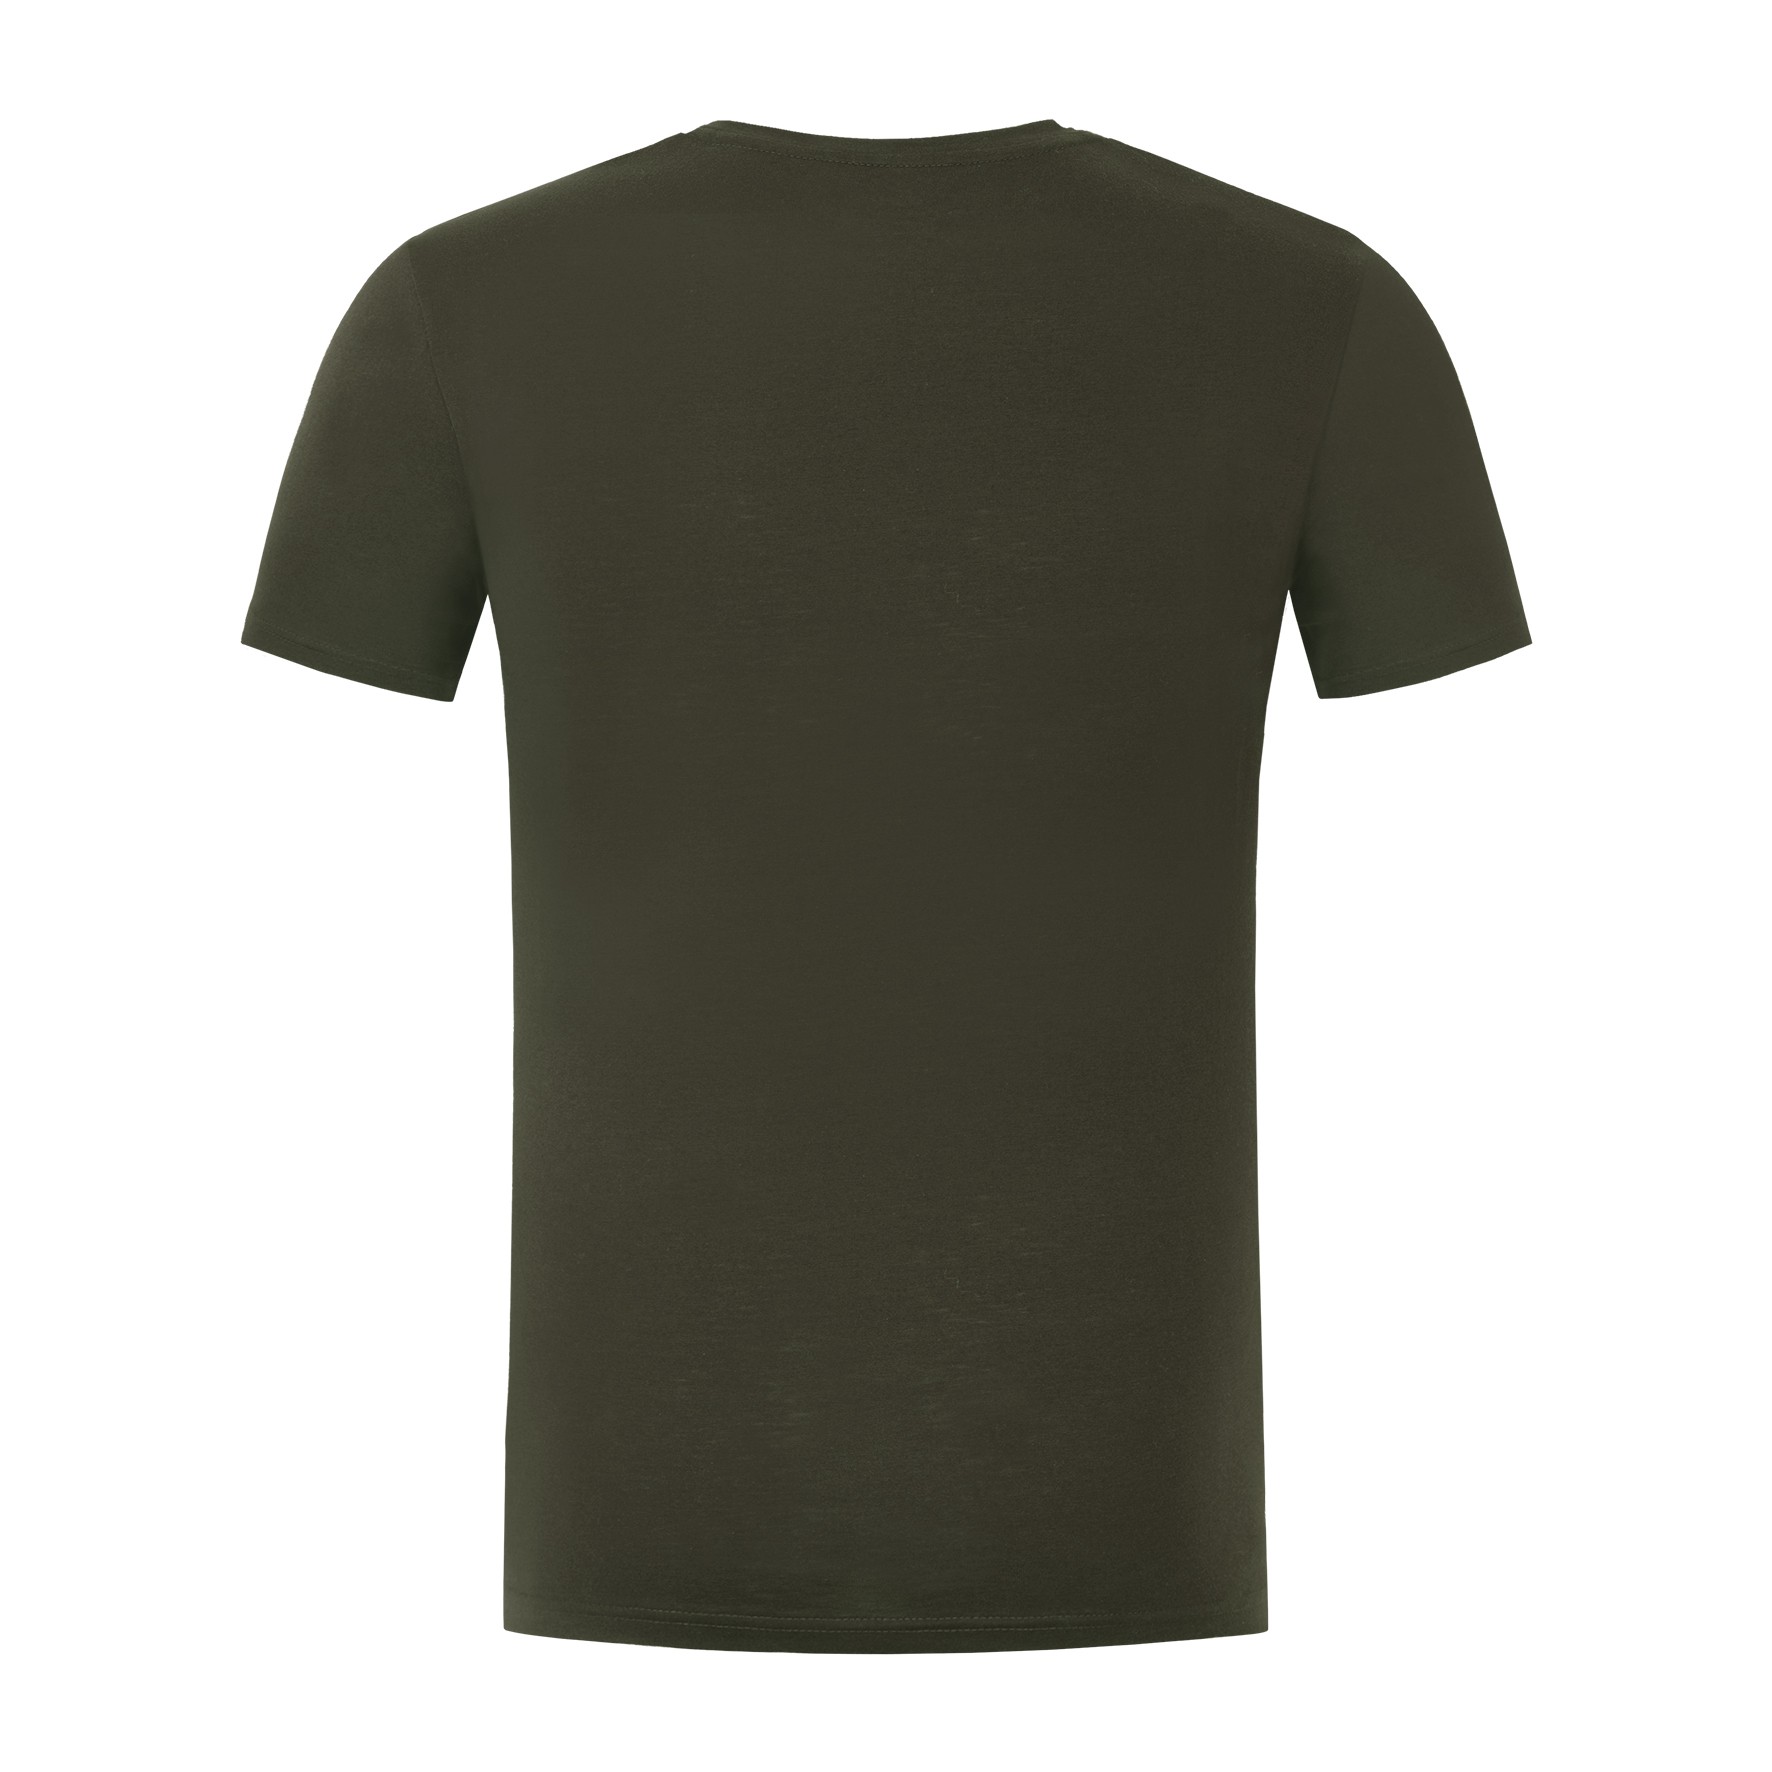 Korda Outline Tee Dark Olive T-Shirt